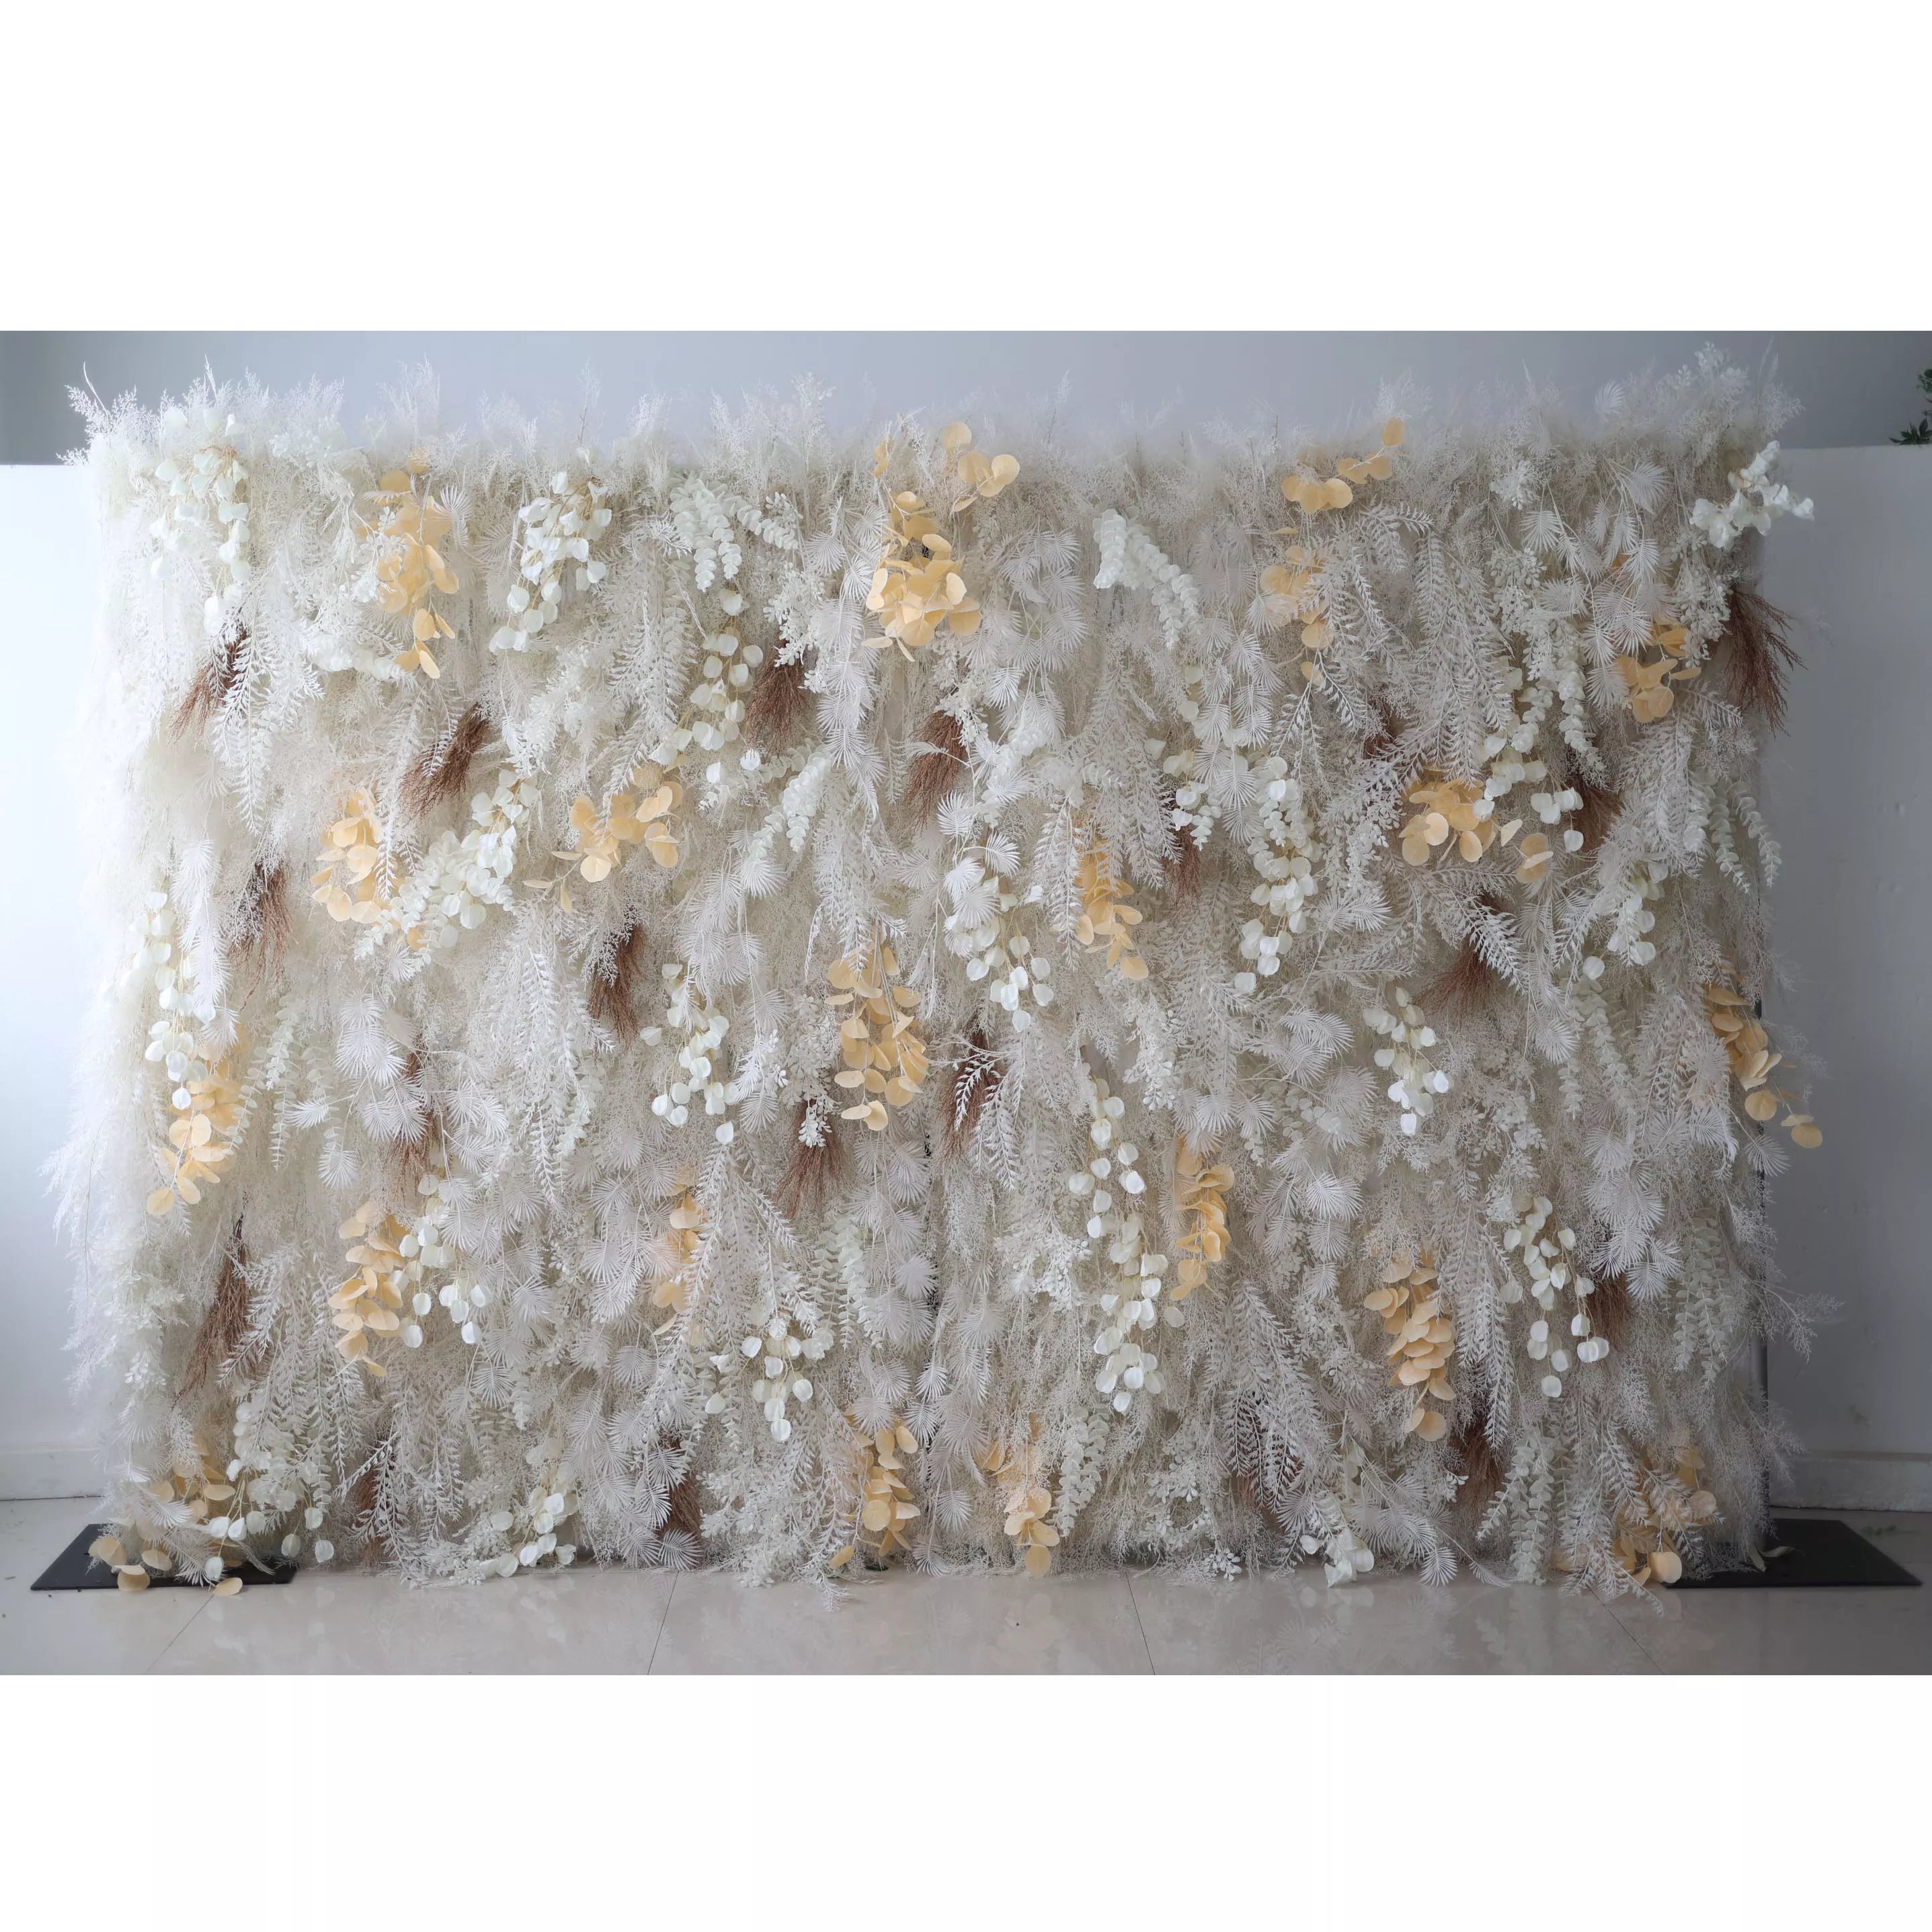 Valar Flower dévoile : Le paysage de neige enchanté – Un majestueux mur de fleurs en tissu artificiel composé de blancs hivernaux et de fleurs dorées-VF-208 